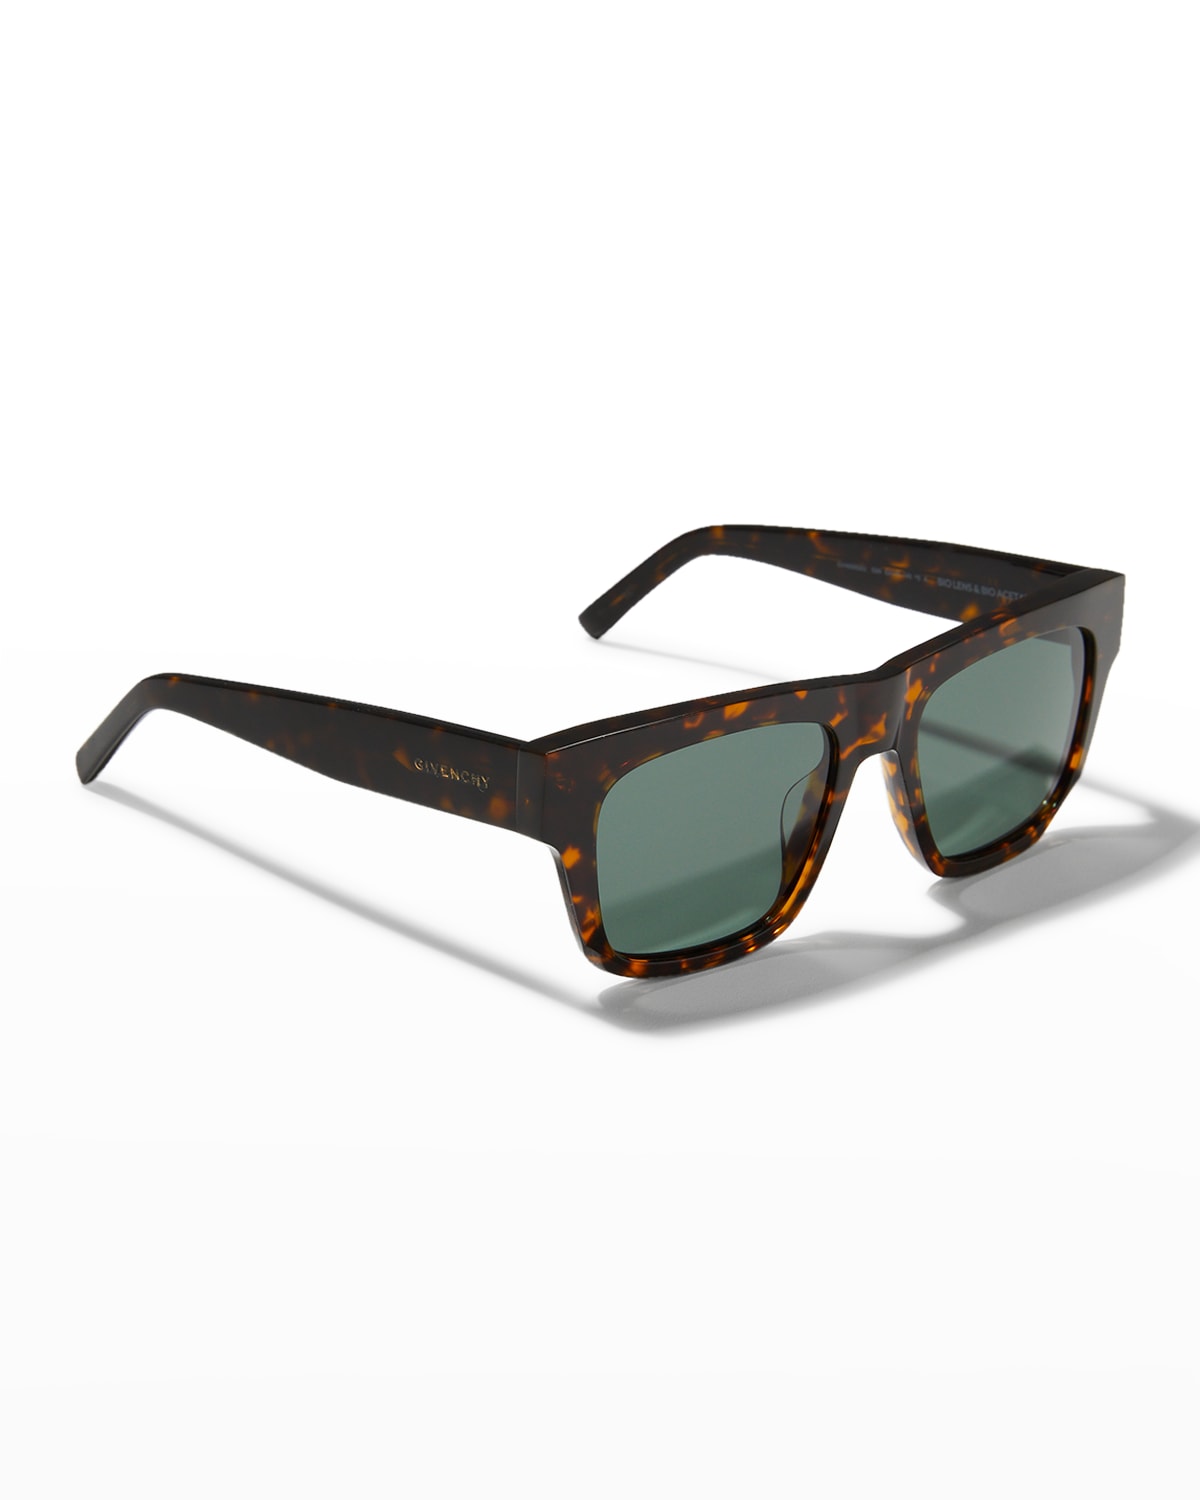 Givenchy 52mm Polarized Square Sunglasses In Dark Havana